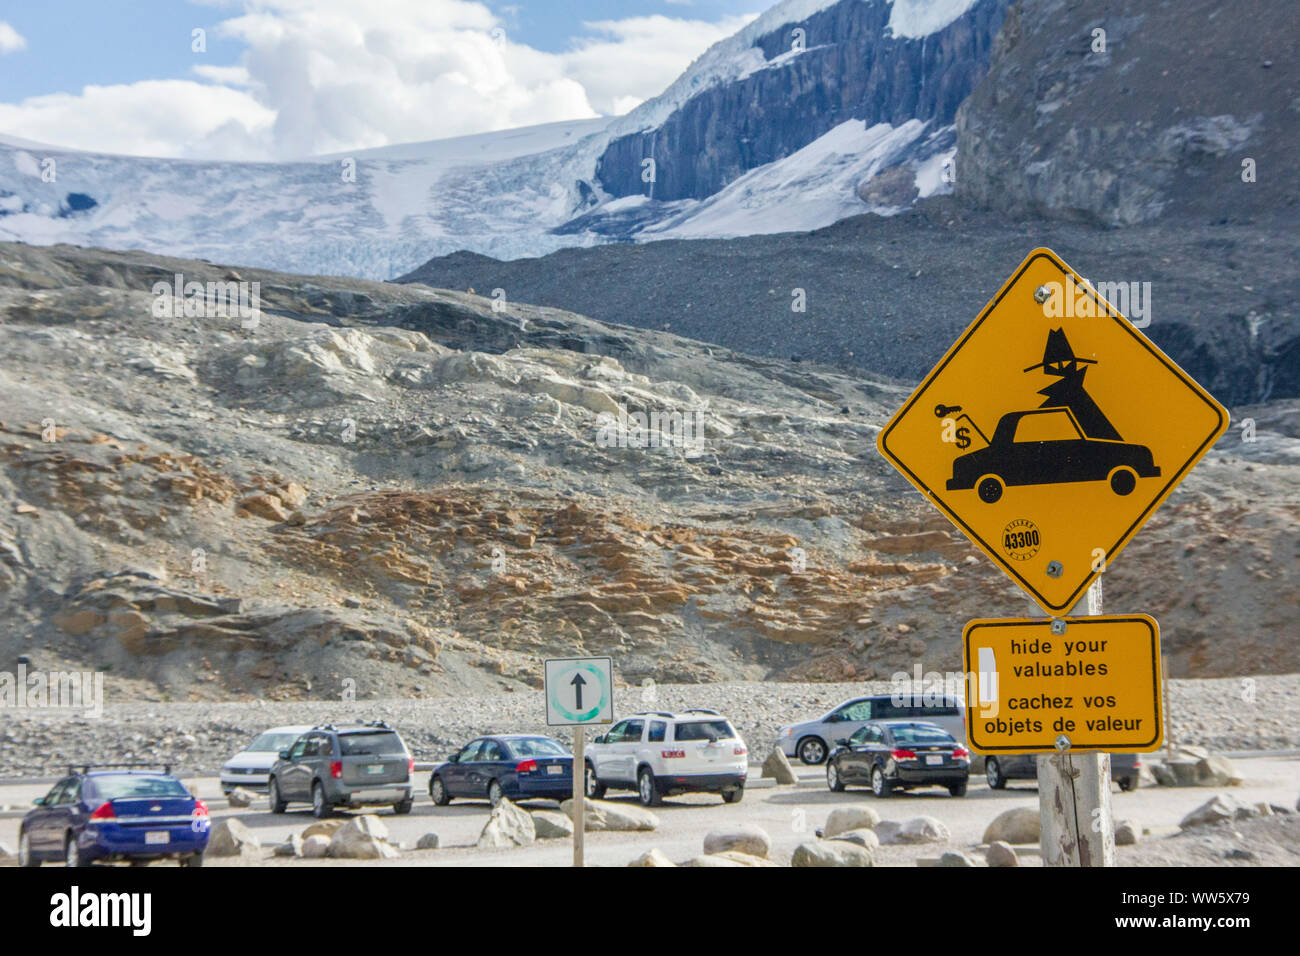 Firmare in un parcheggio in Columbia Icefield nelle Montagne Rocciose, non lasciare oggetti di valore in auto Foto Stock